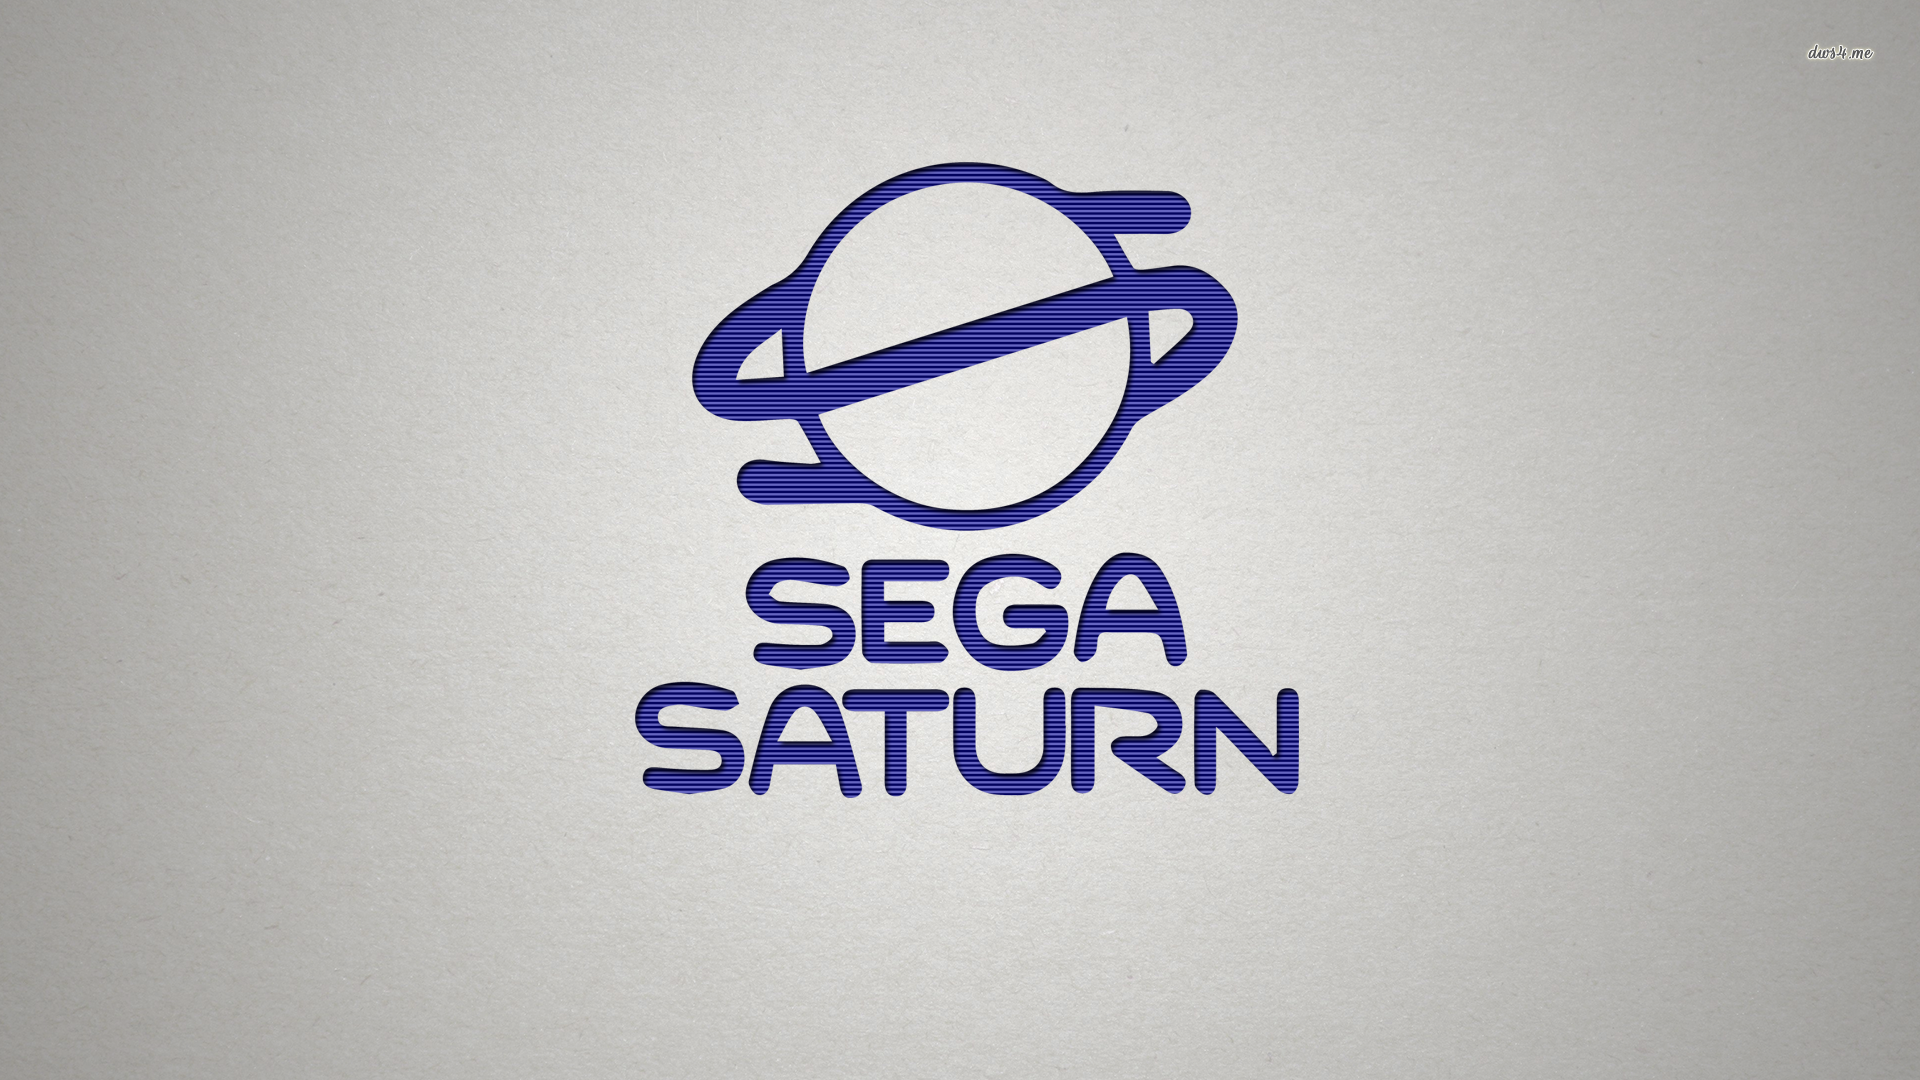 Sega Saturn Wallpaper